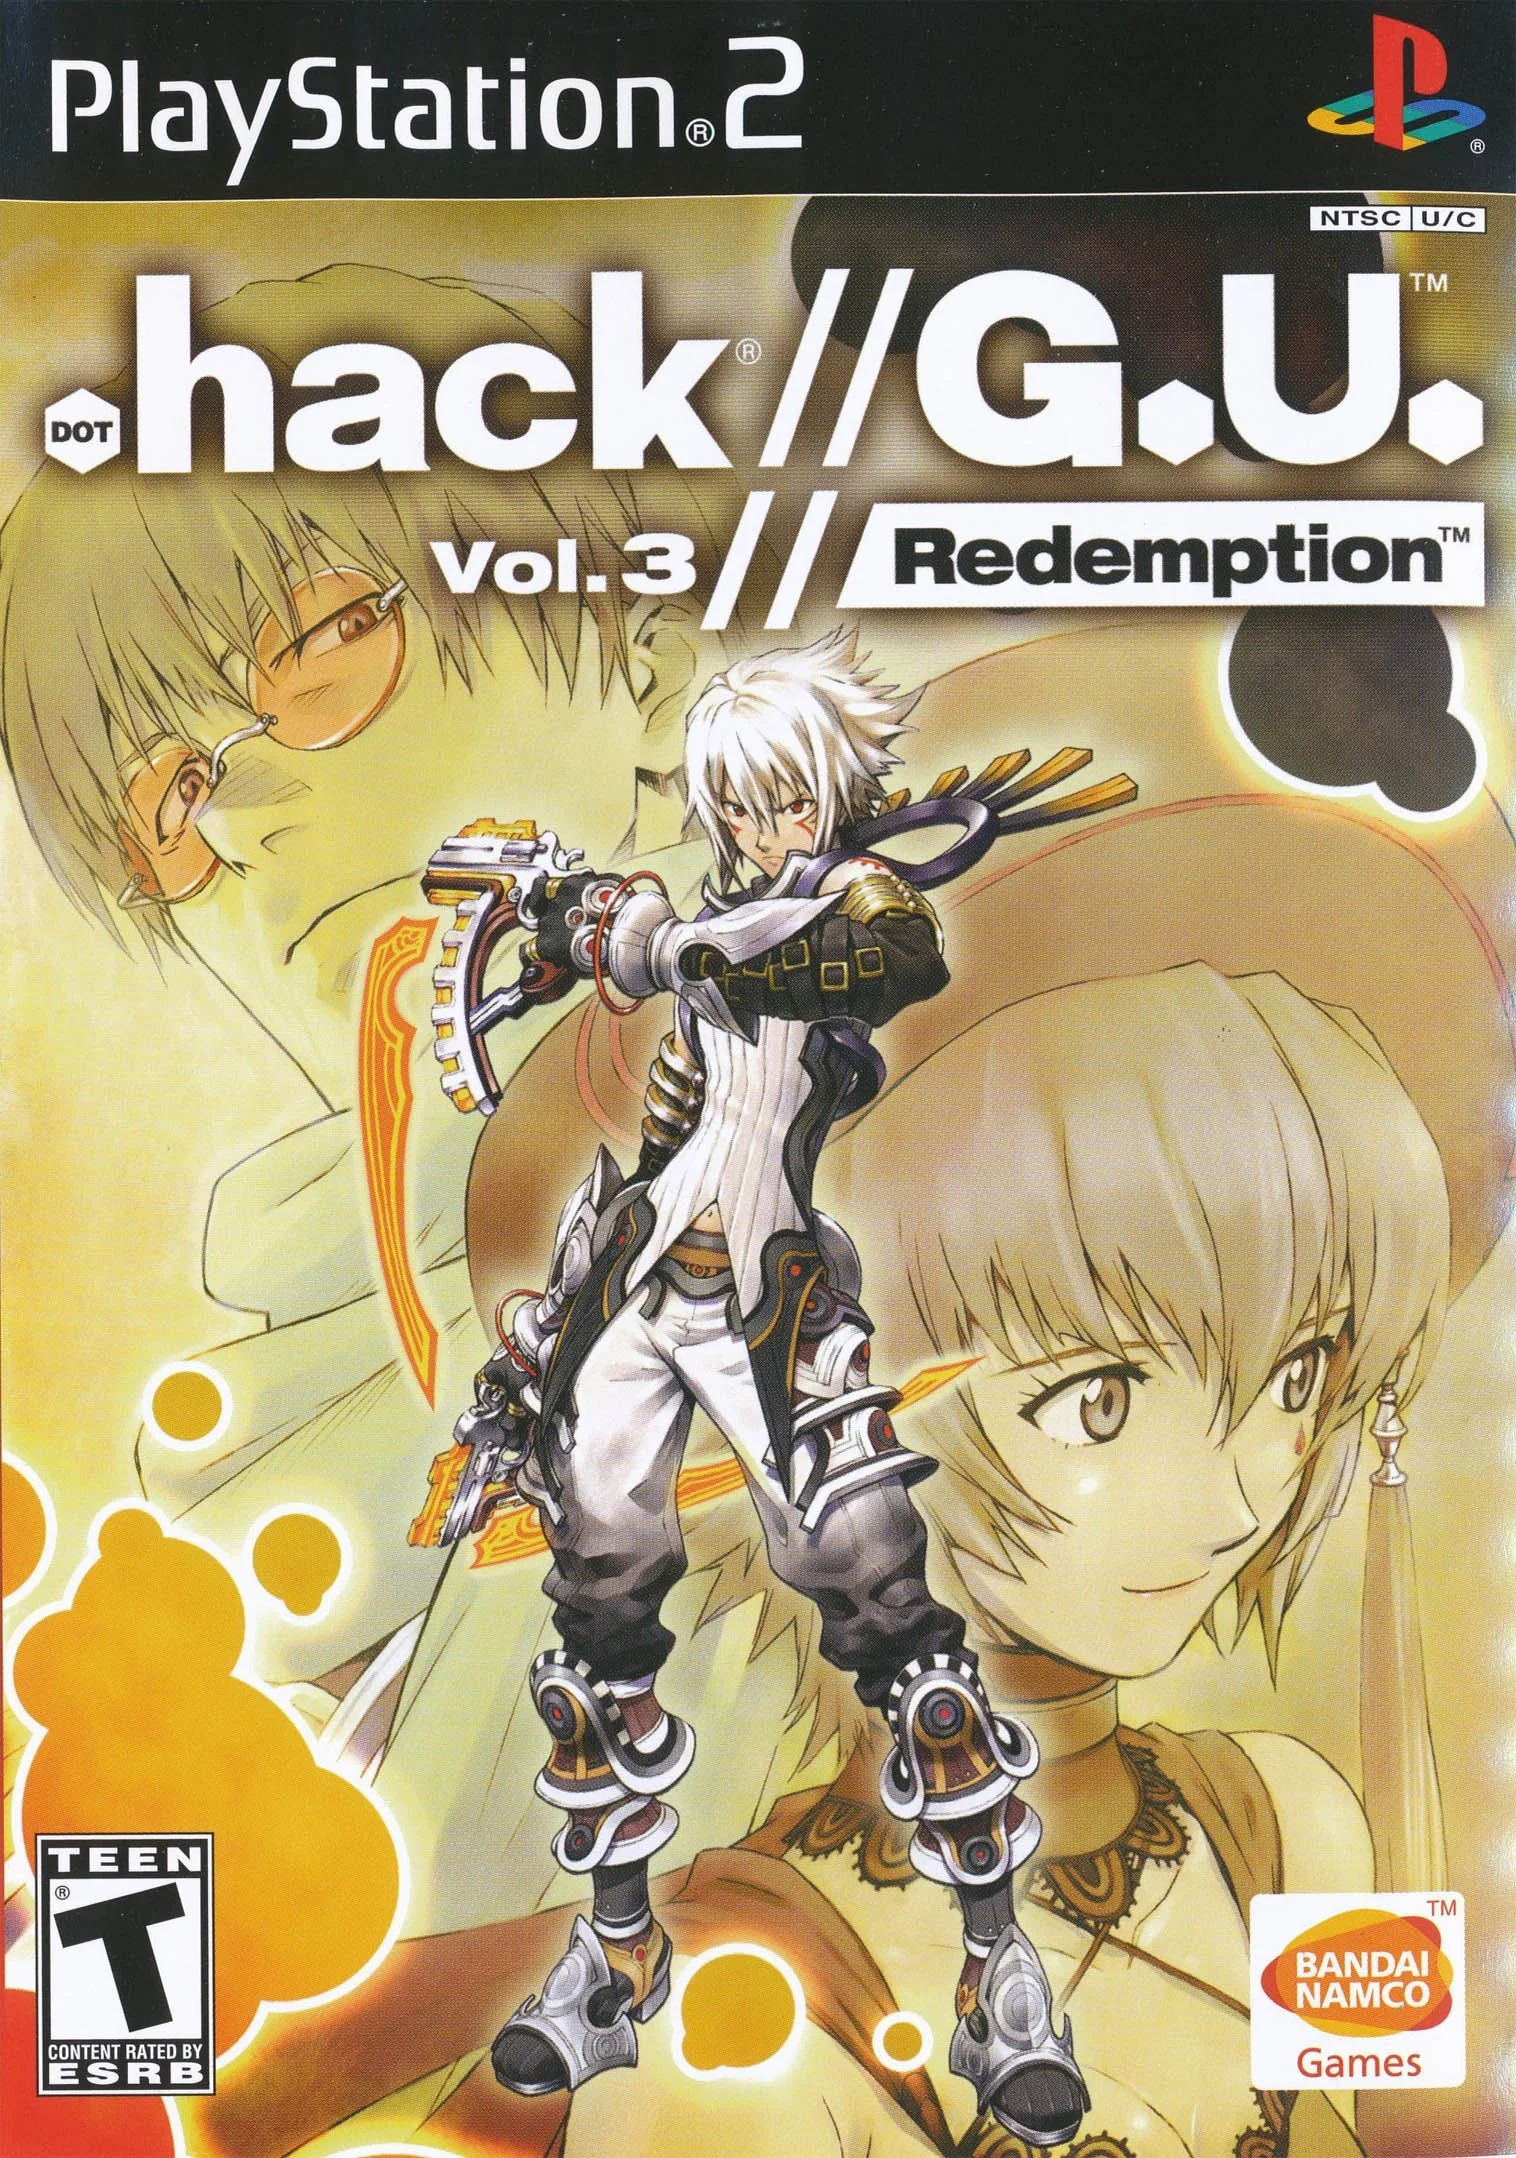 .hack//G.U.: Vol. 3 - Redemption